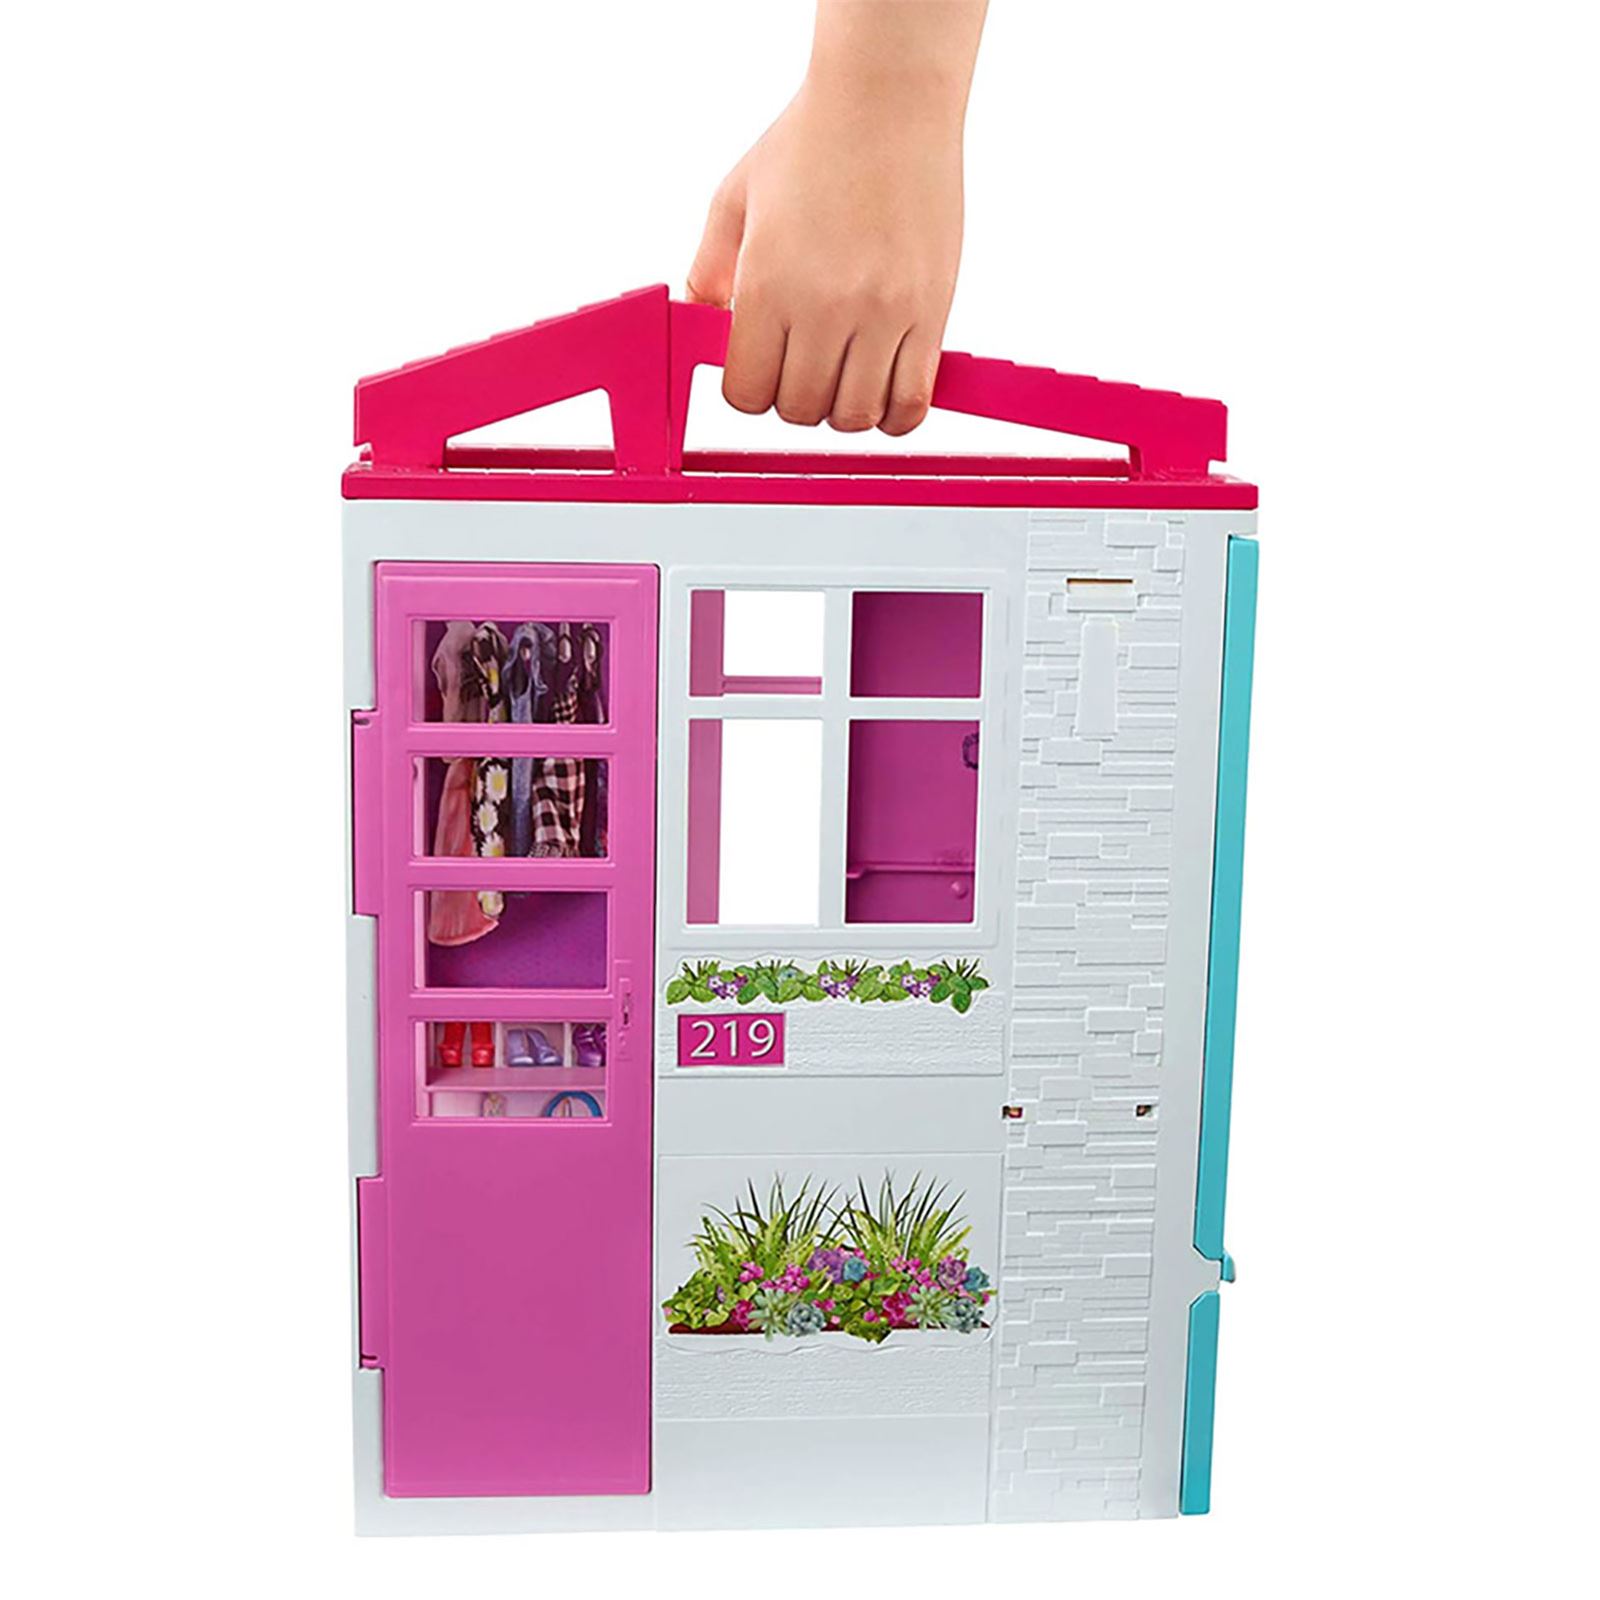 Barbie'nin Taşınabilir Portatif Evi 3+ Yaş